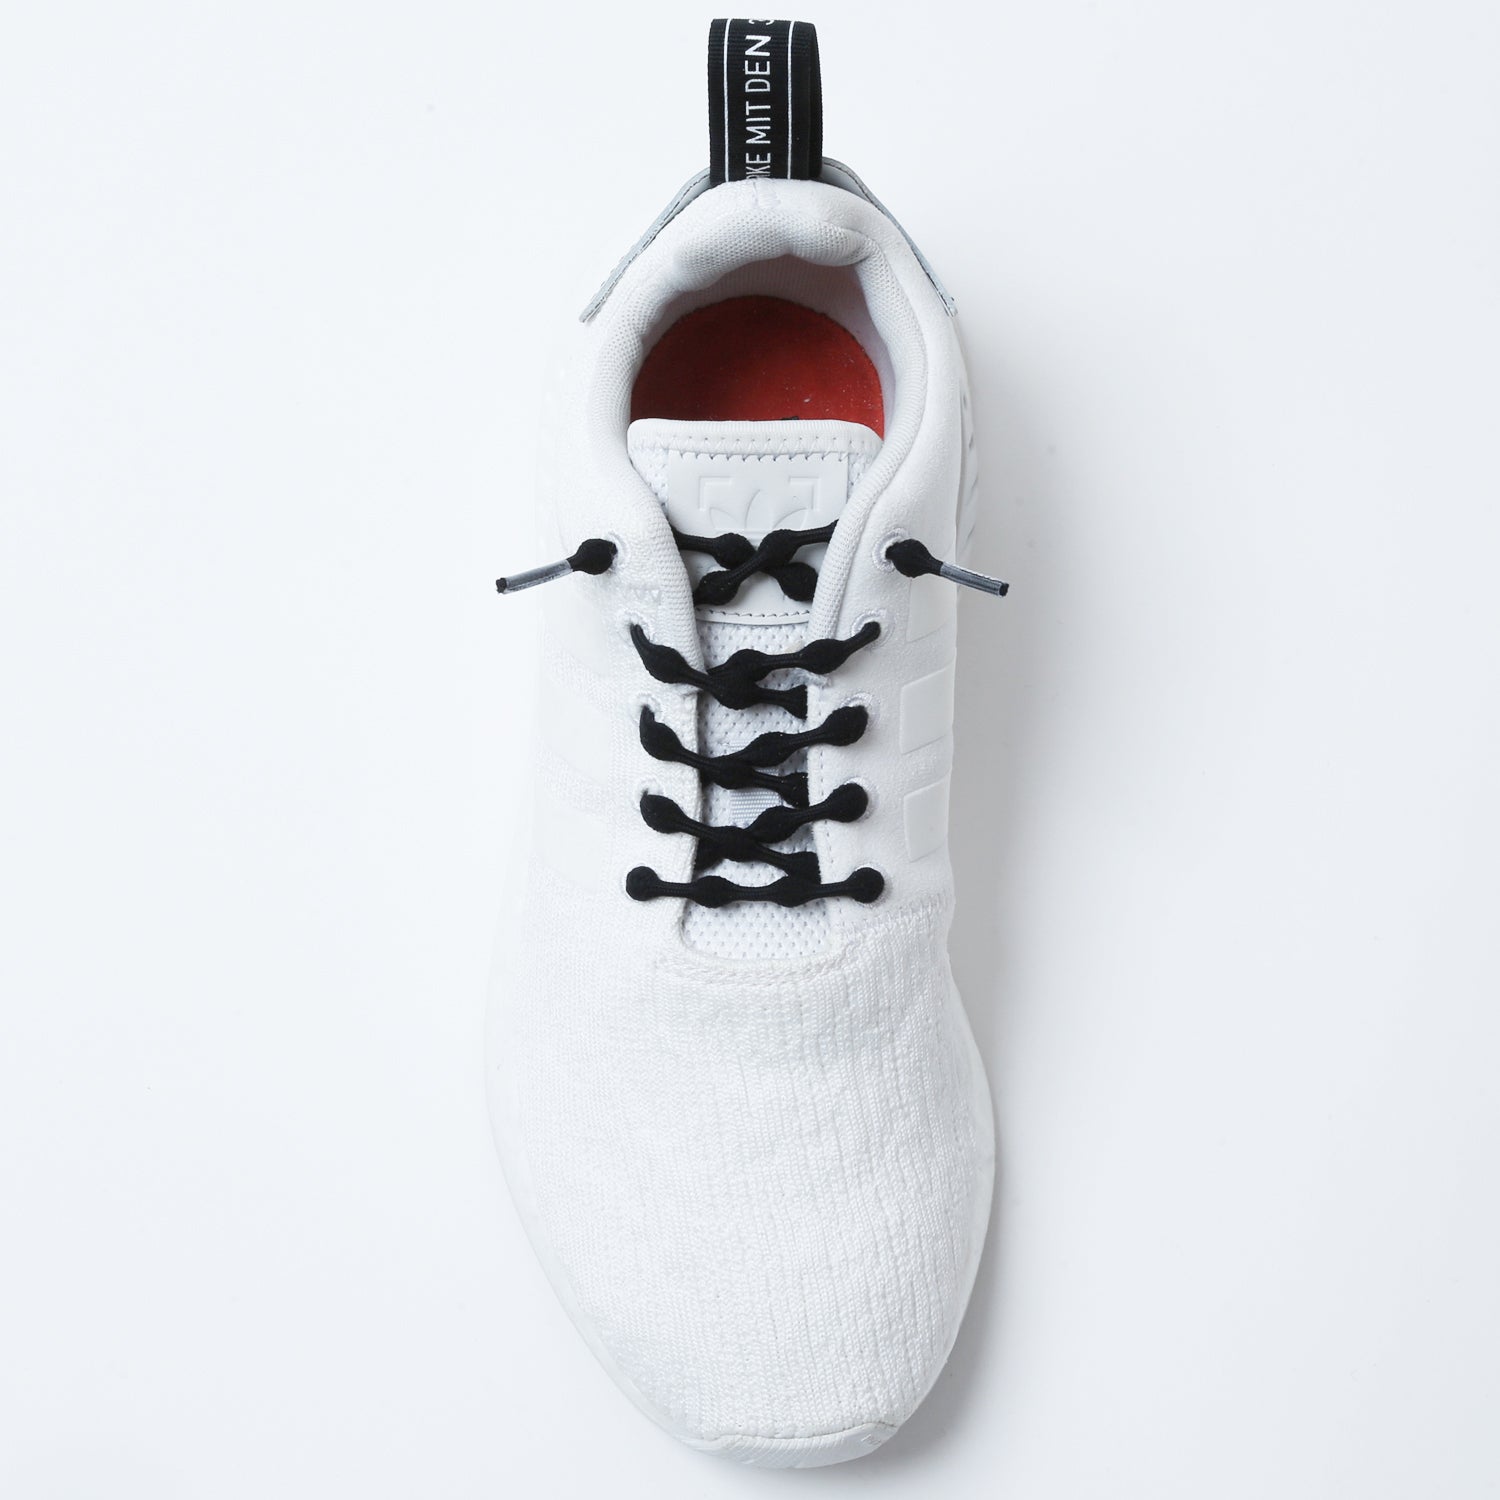 Ongelijkheid Ingrijpen bundel The Original No tie shoelace | Laces for runners | The Original - Caterpy  Run